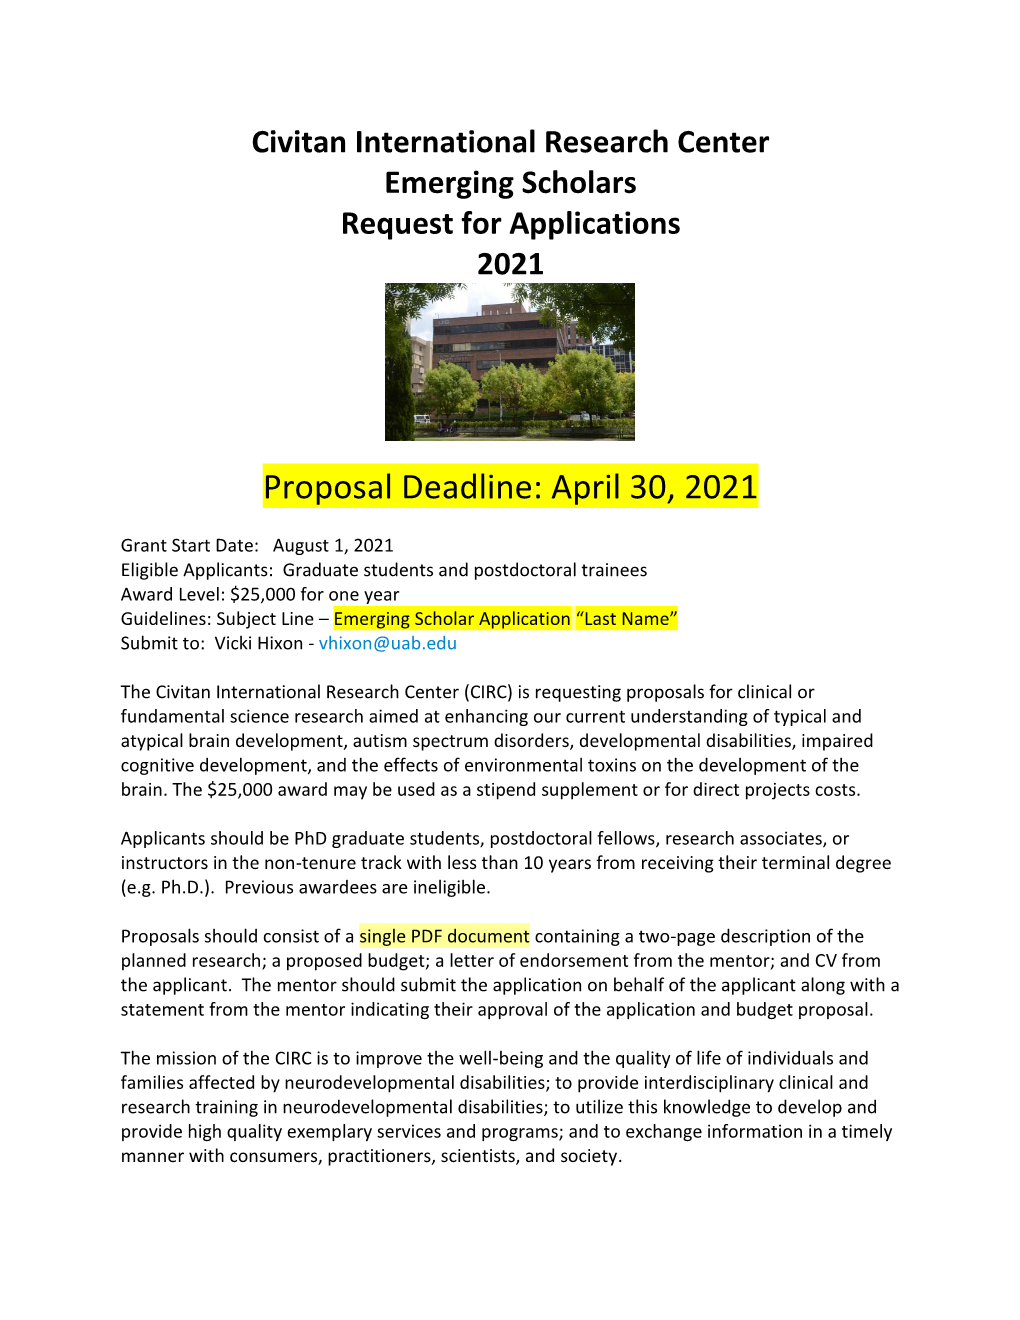 Proposal Deadline: April 30, 2021